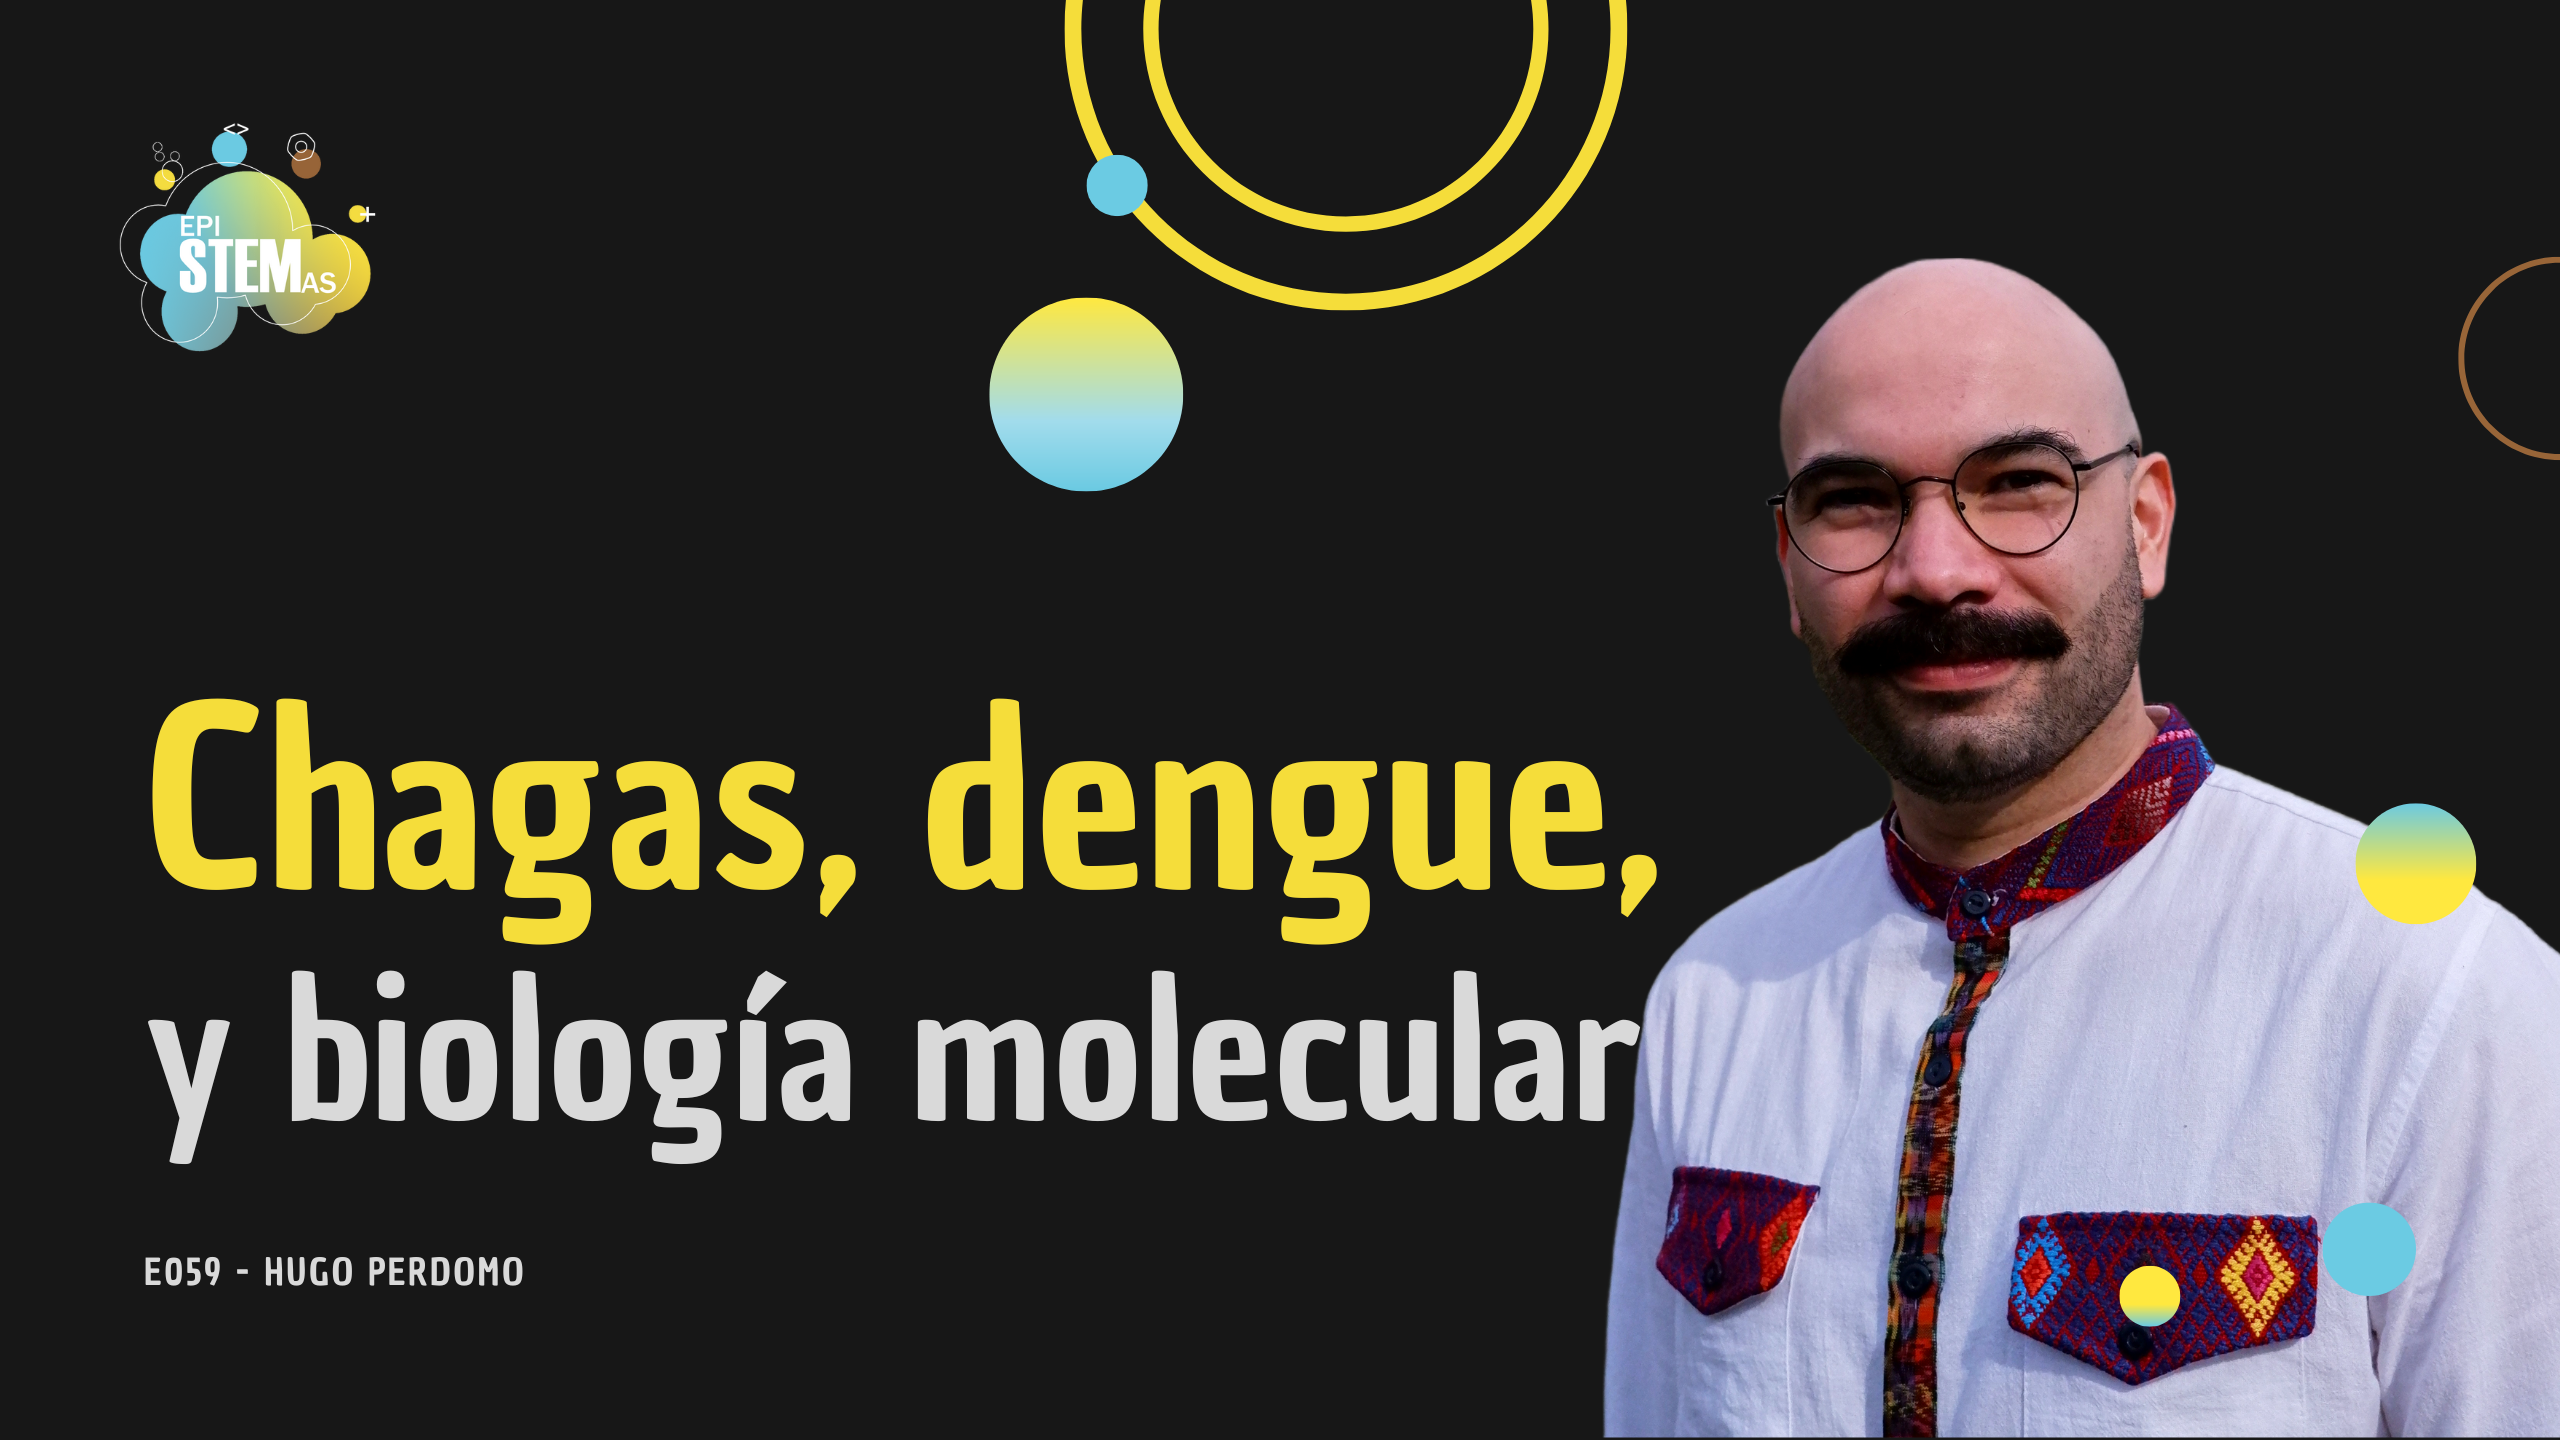 Chagas, dengue, y biología molecular